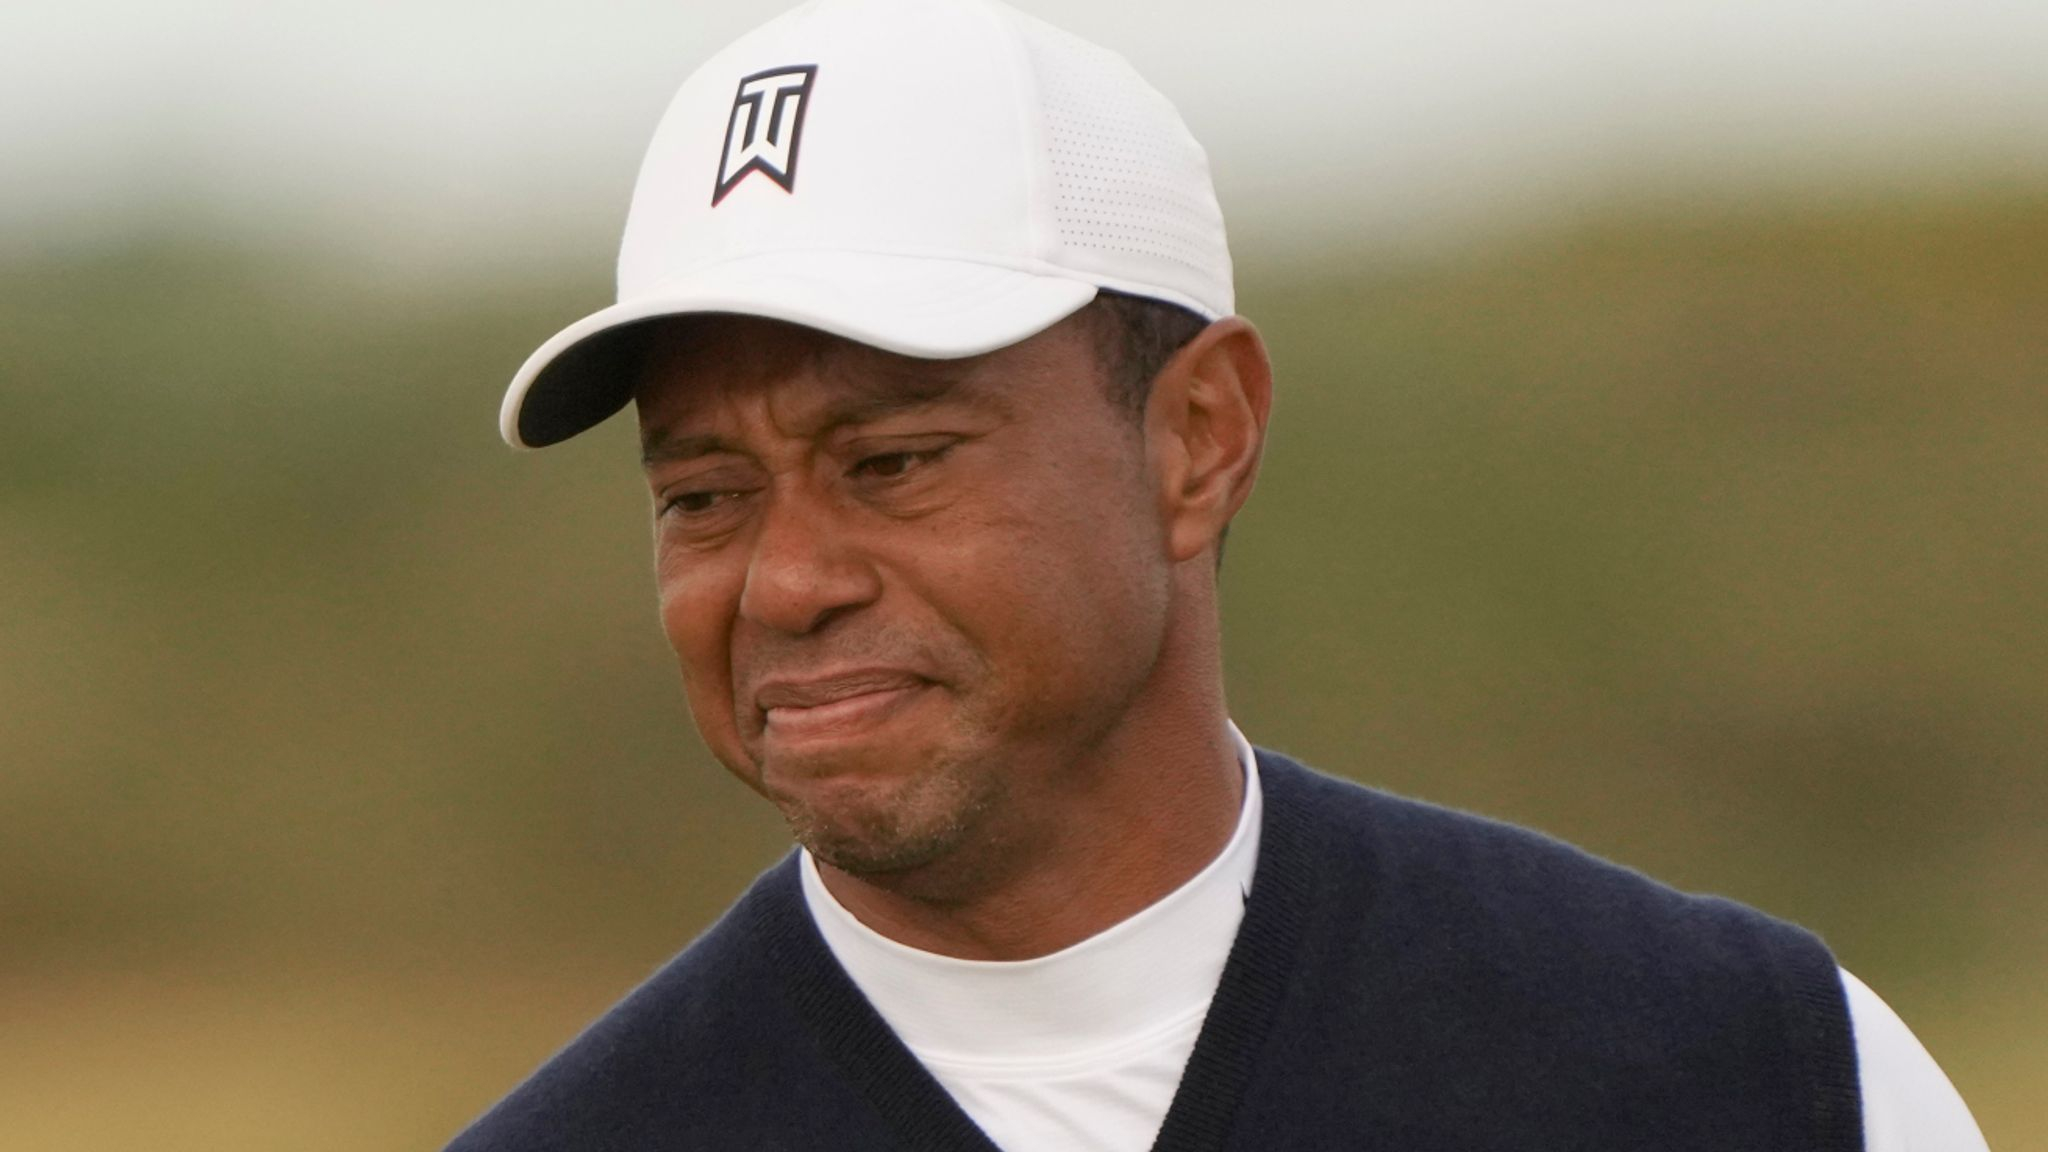 Huyền thoại Tiger Woods từ chối làm "kẻ phản bội" vì 19 nghìn tỷ đồng